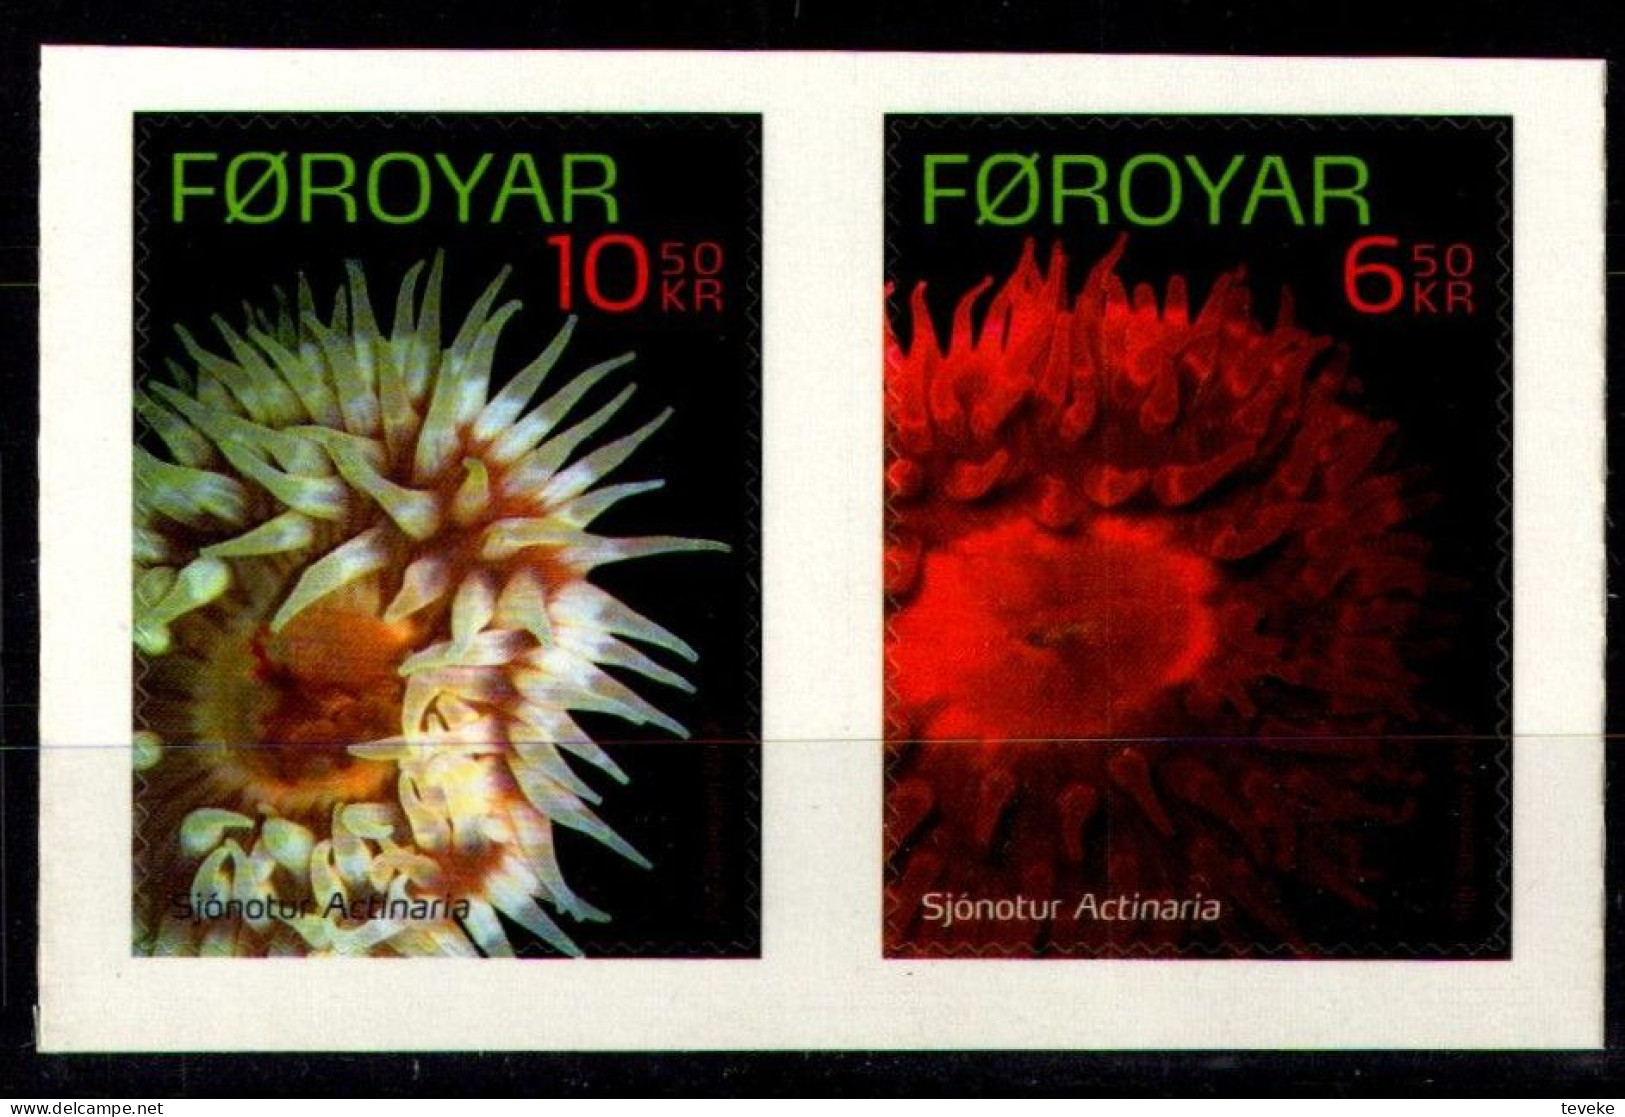 FAEROËR 2012 - MiNr. 743/744 - **/MNH - Fauna - Sea Animals: Sea Anemones - Faeroër